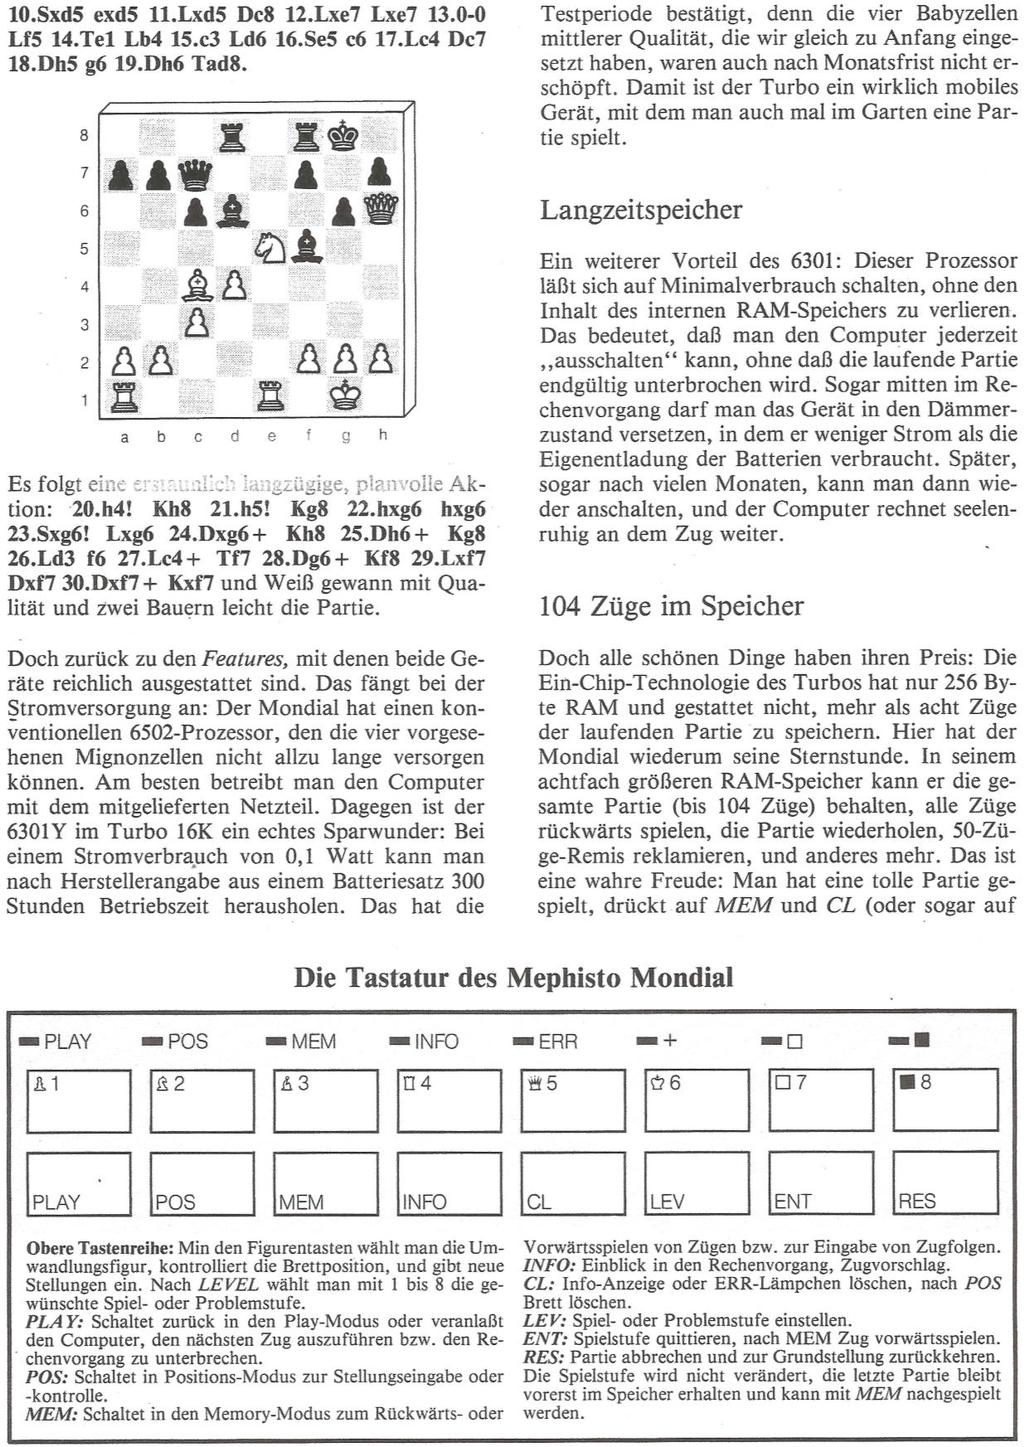 Frederic Friedel: Mephisto Mondial und SciSys Turbo 16K (Quelle: Computer-Schach &